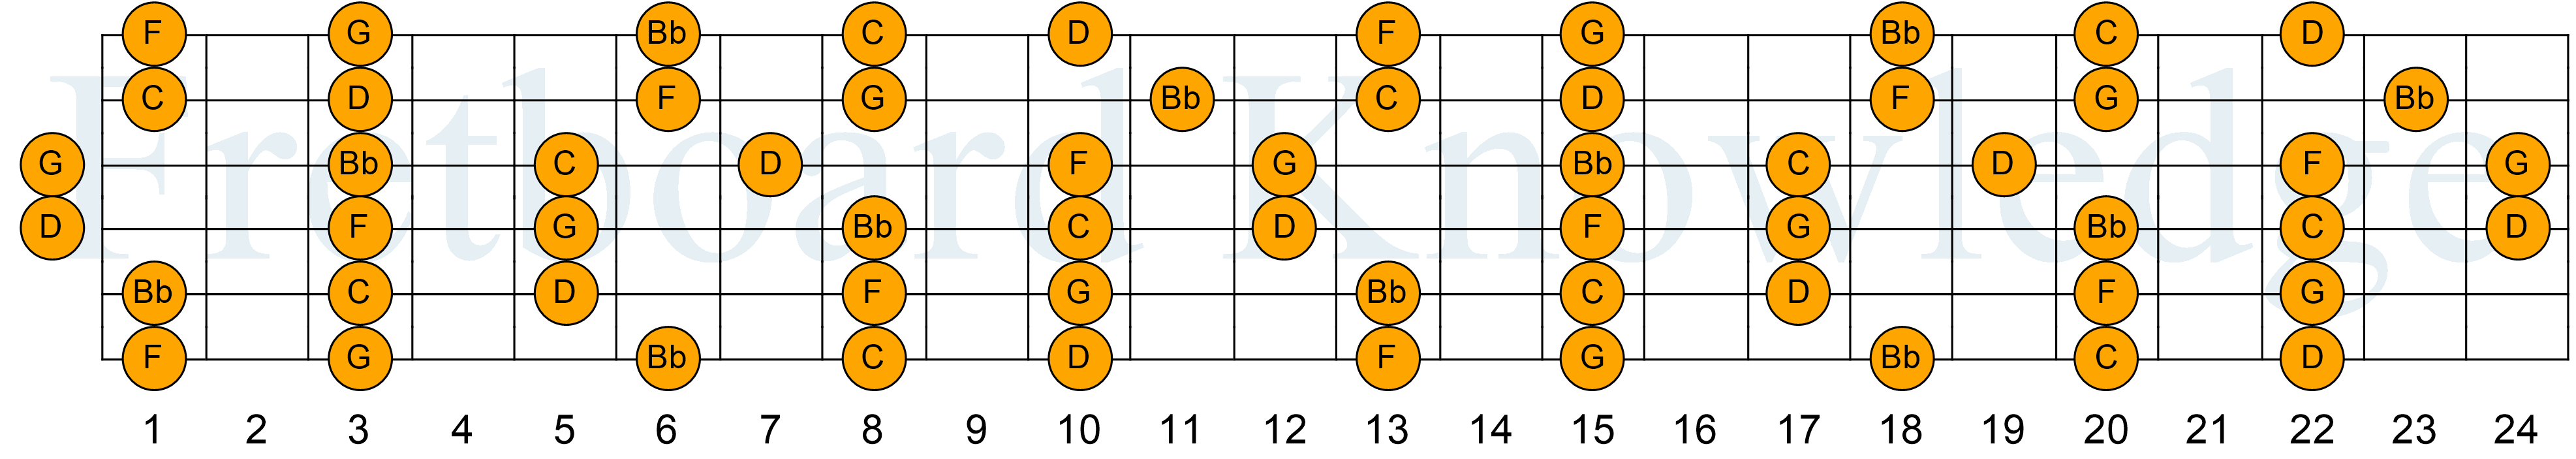 Gm Pentatonic Guitar Fretboard Diagram